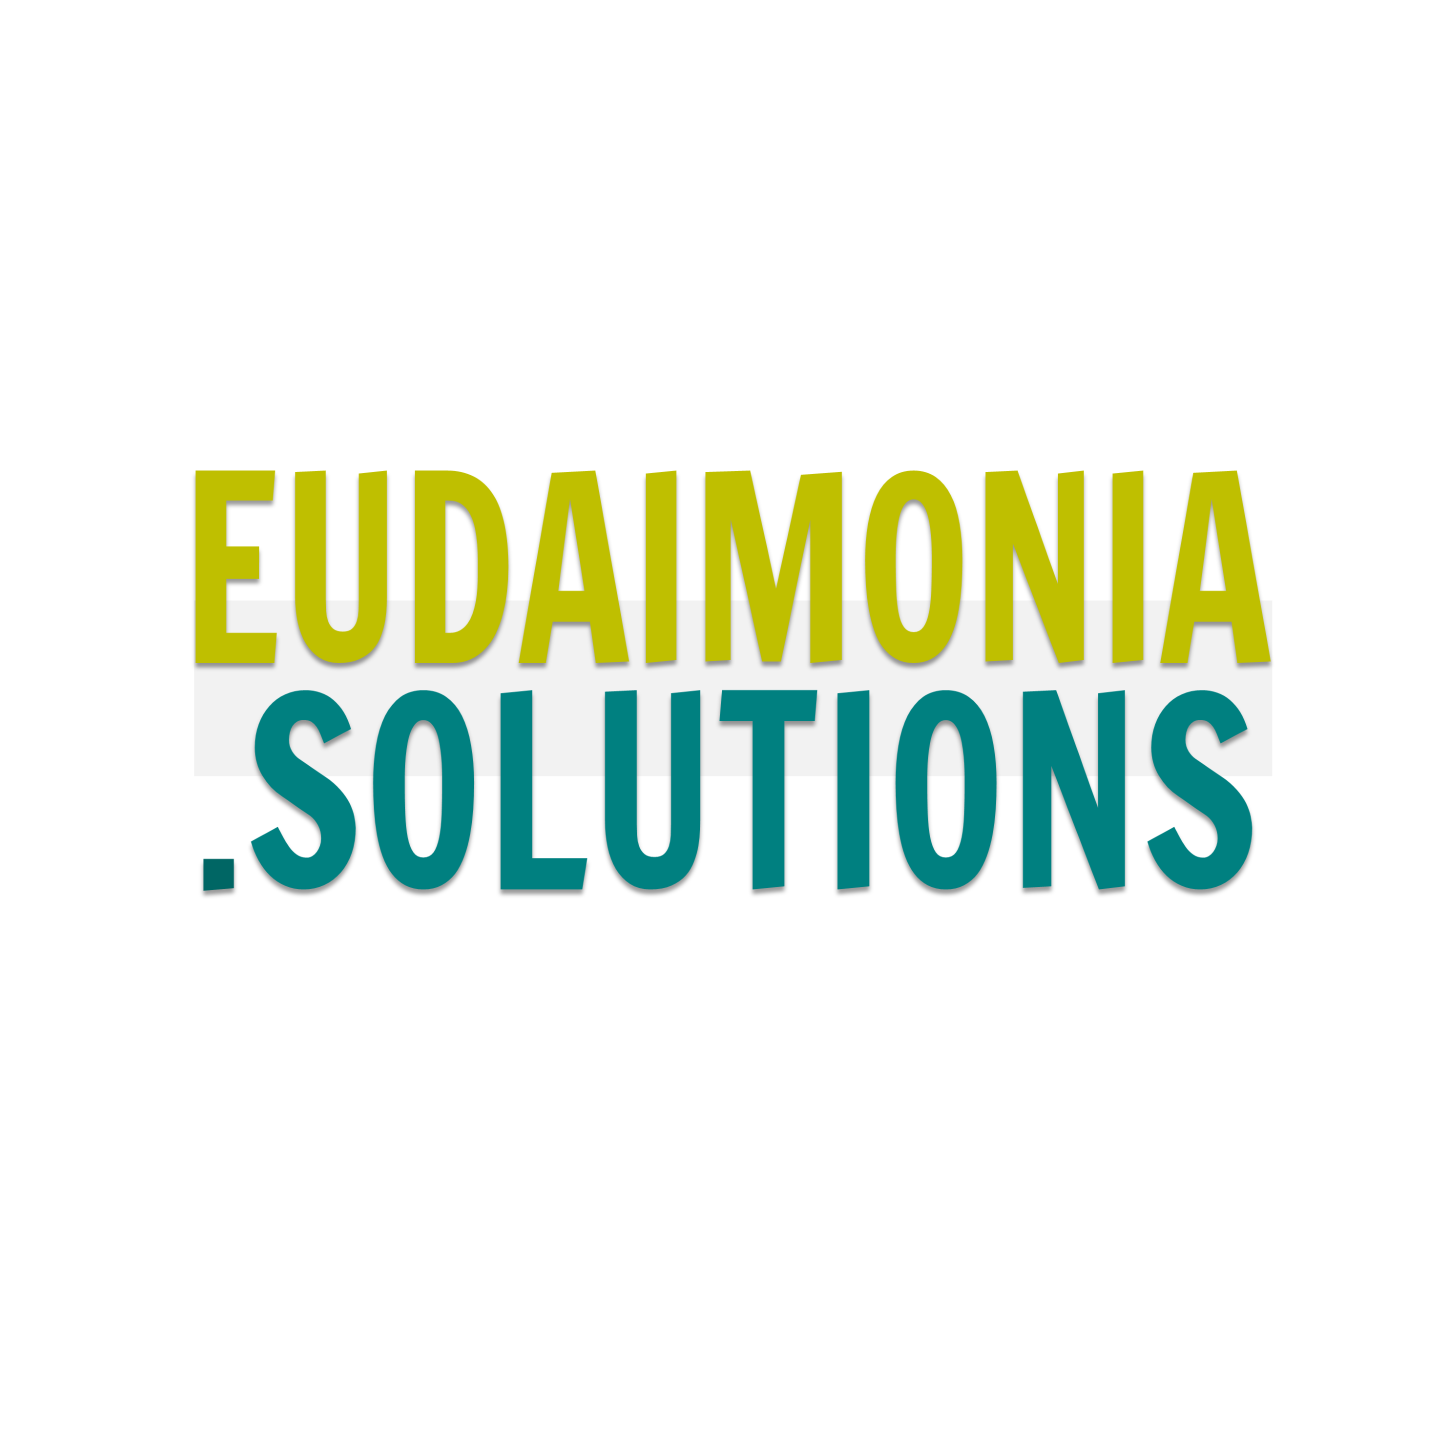 Eudaimonia Solutions - Medium.